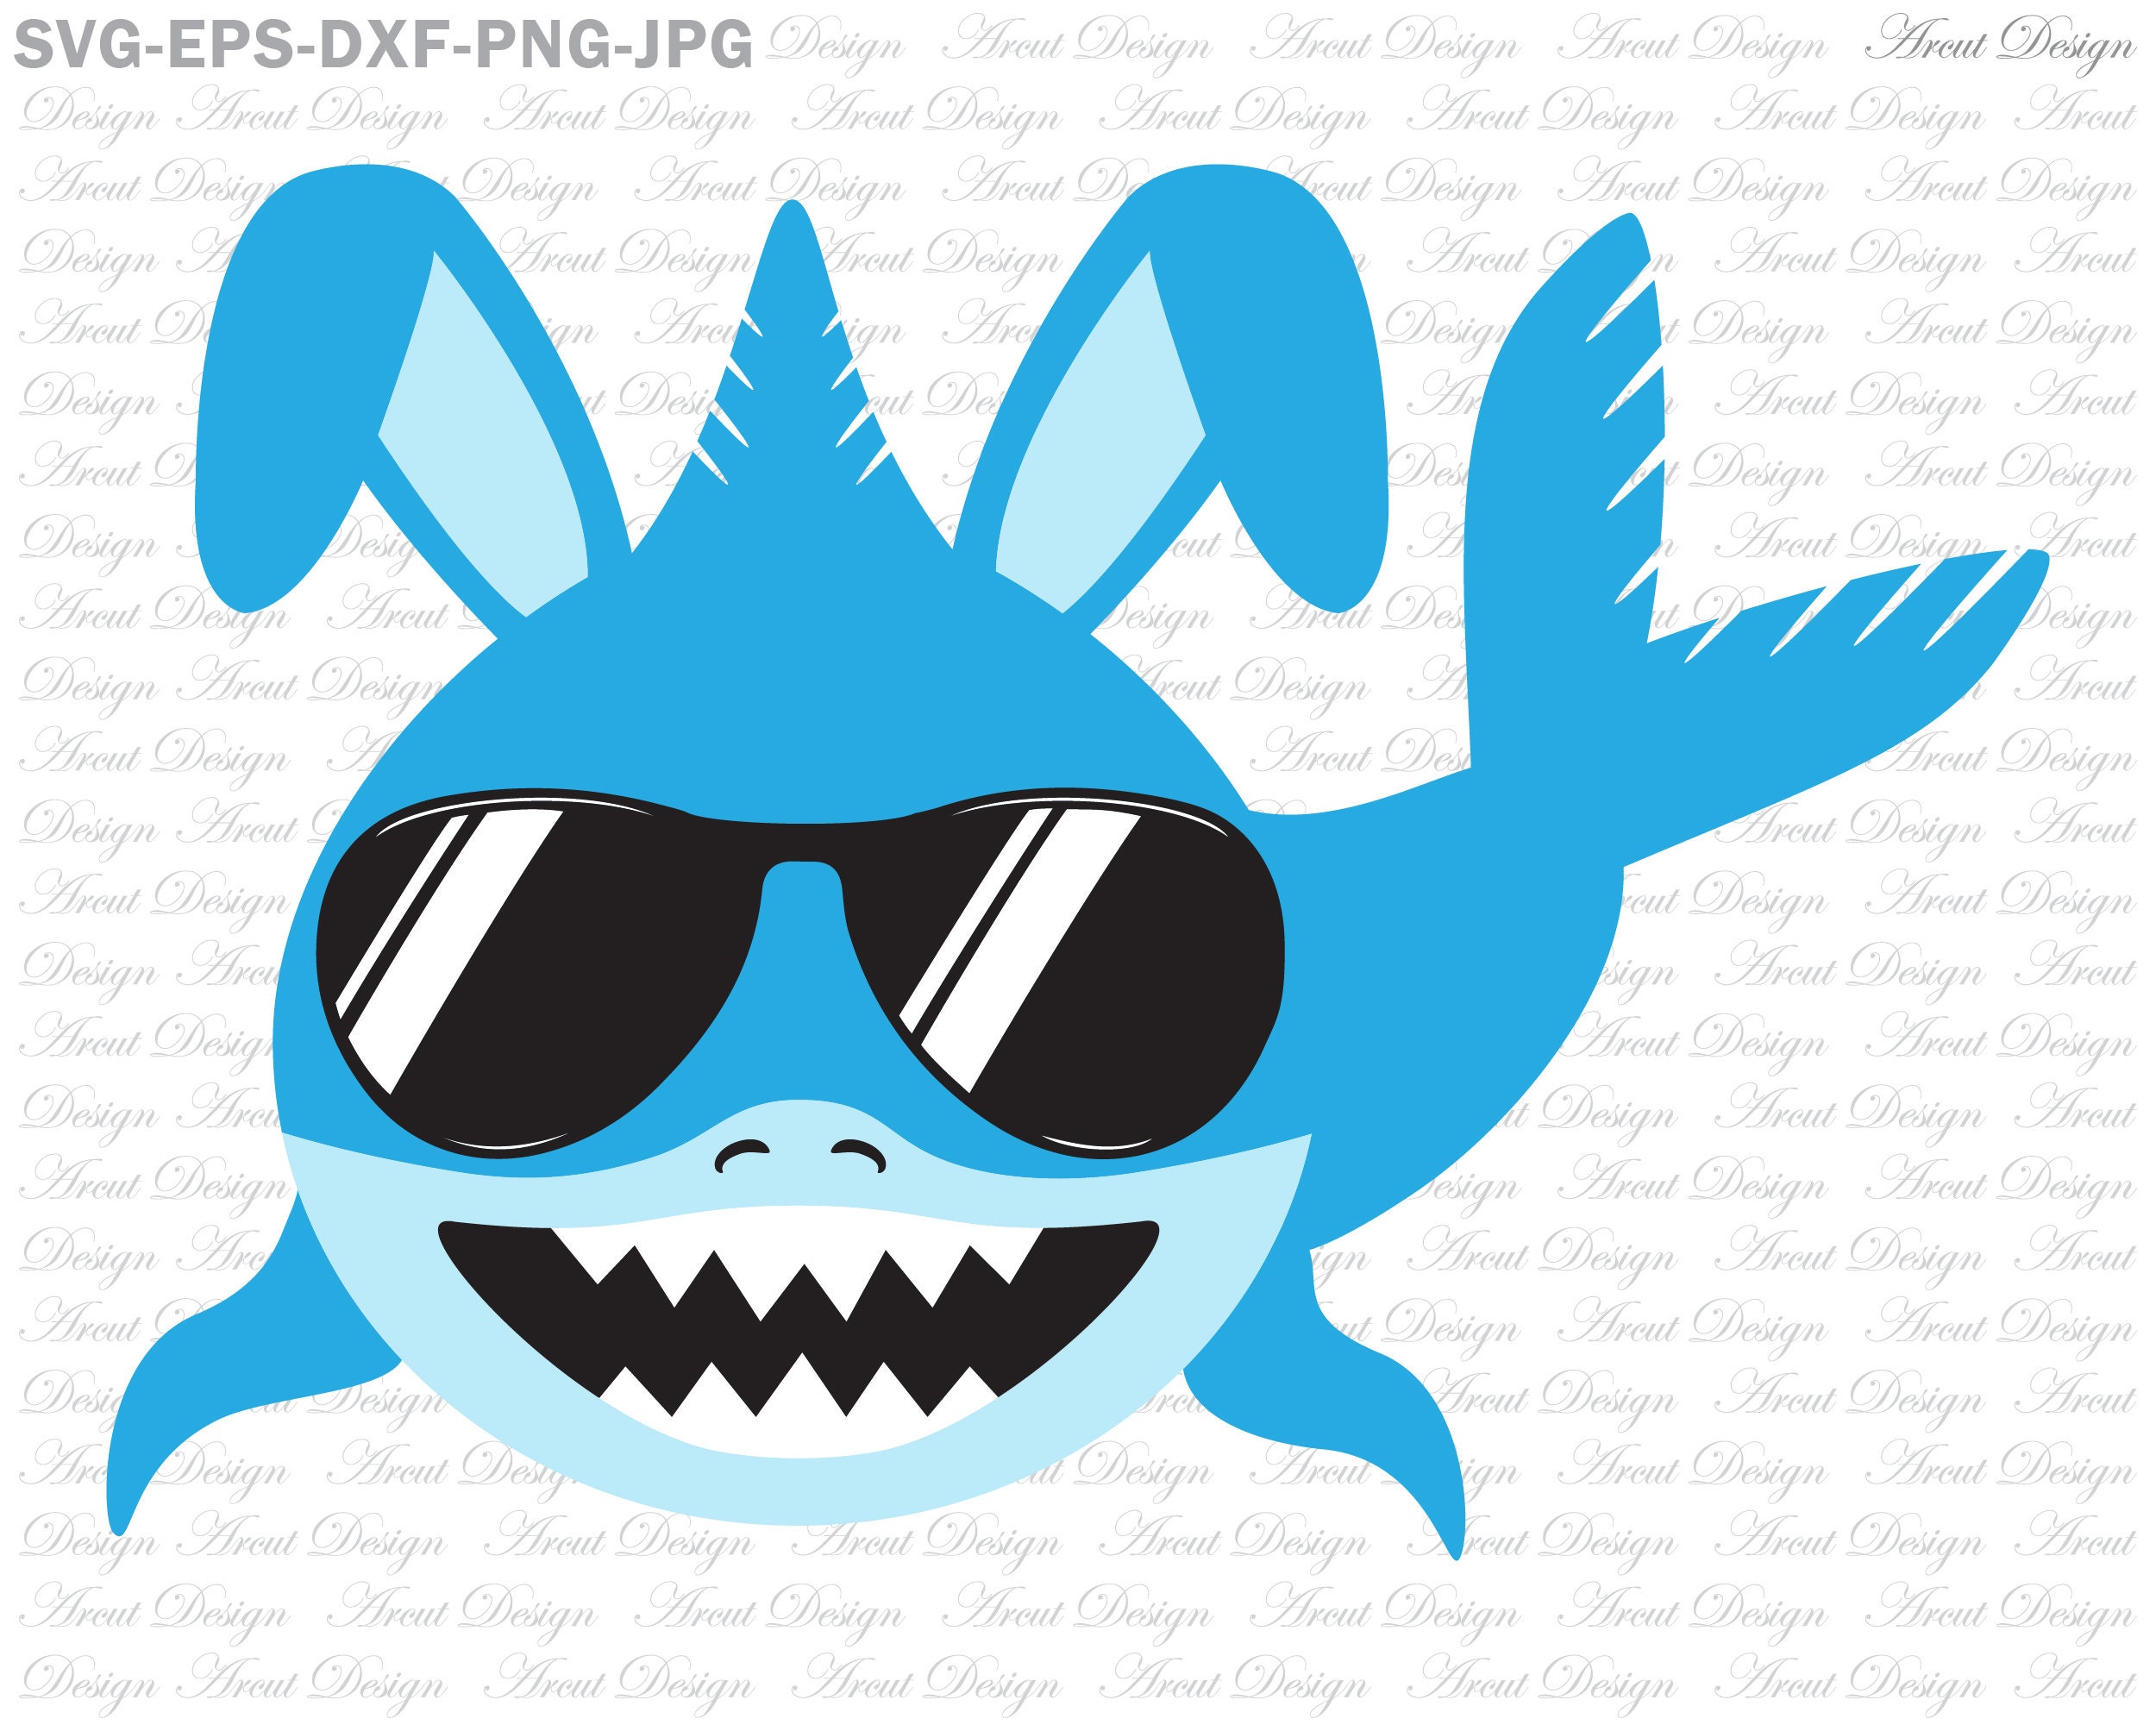 Free Free 126 Easter Shark Svg SVG PNG EPS DXF File